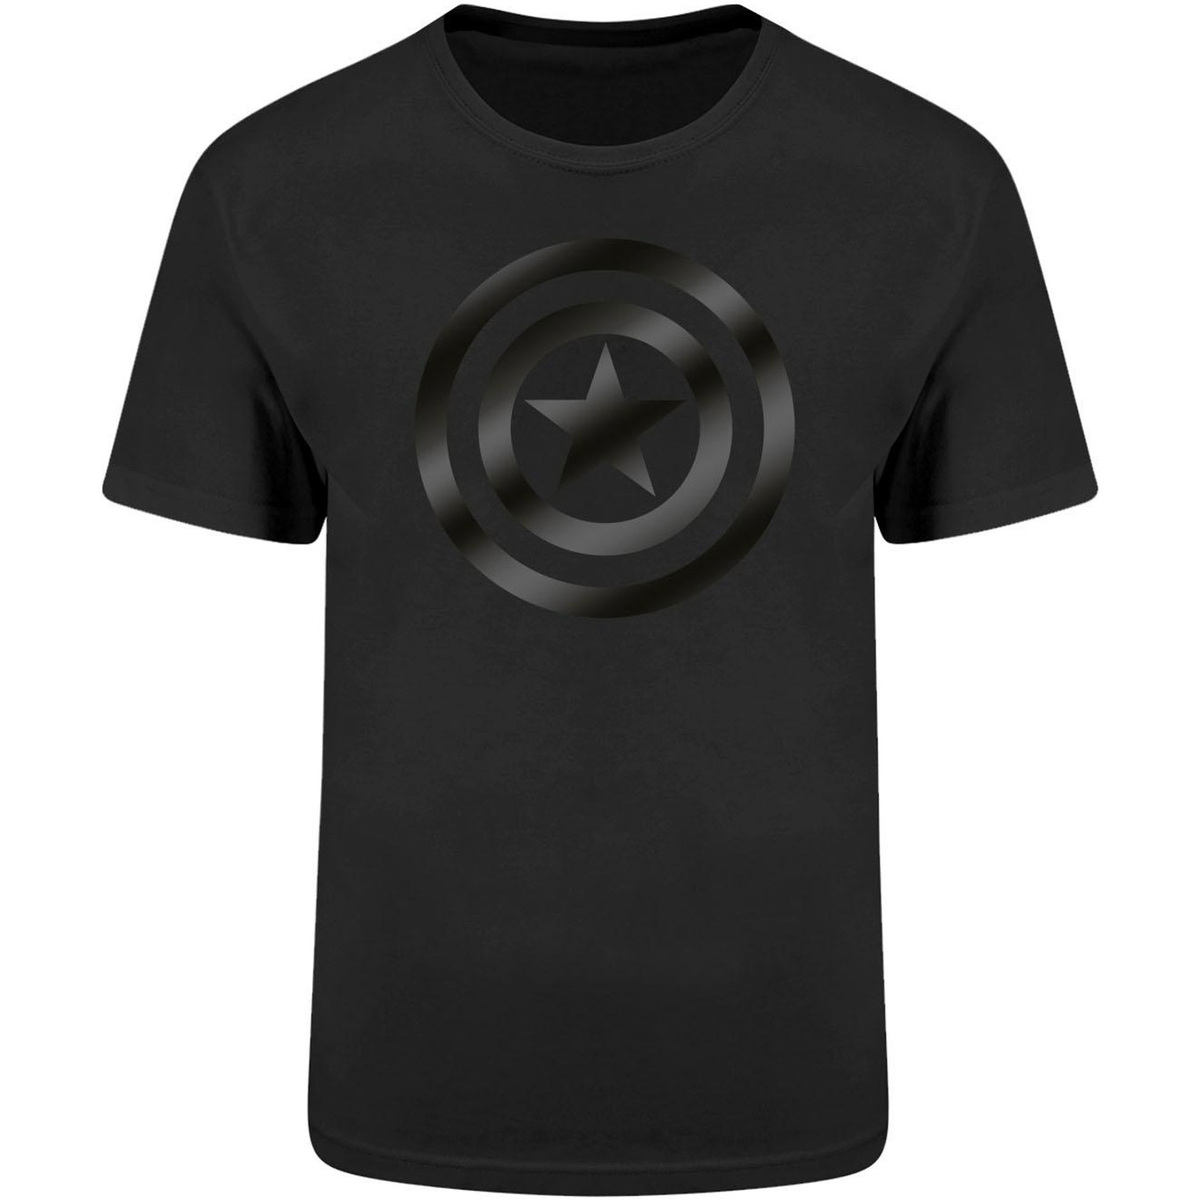 Vêtements T-shirts manches longues Captain America HE592 Noir